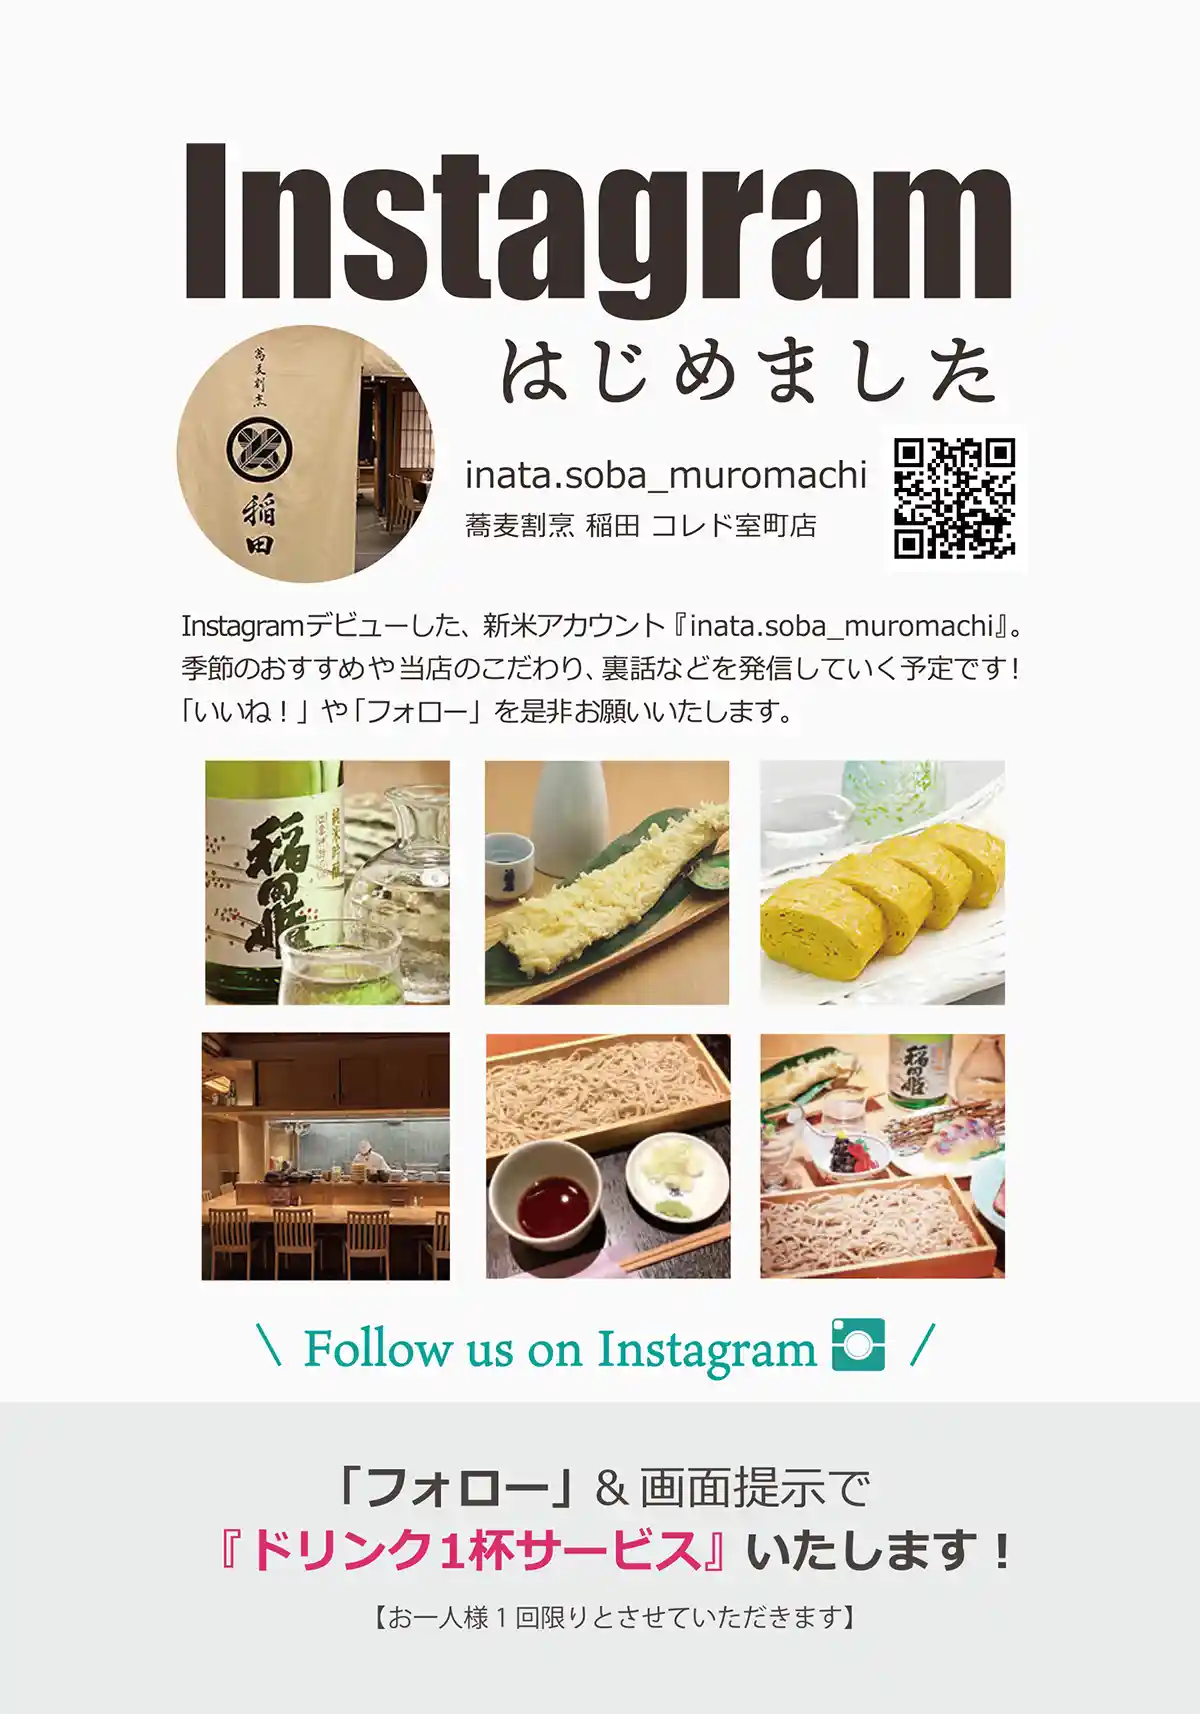 蕎麦割烹 稲田 InstagramはじめましたPOPイメージ